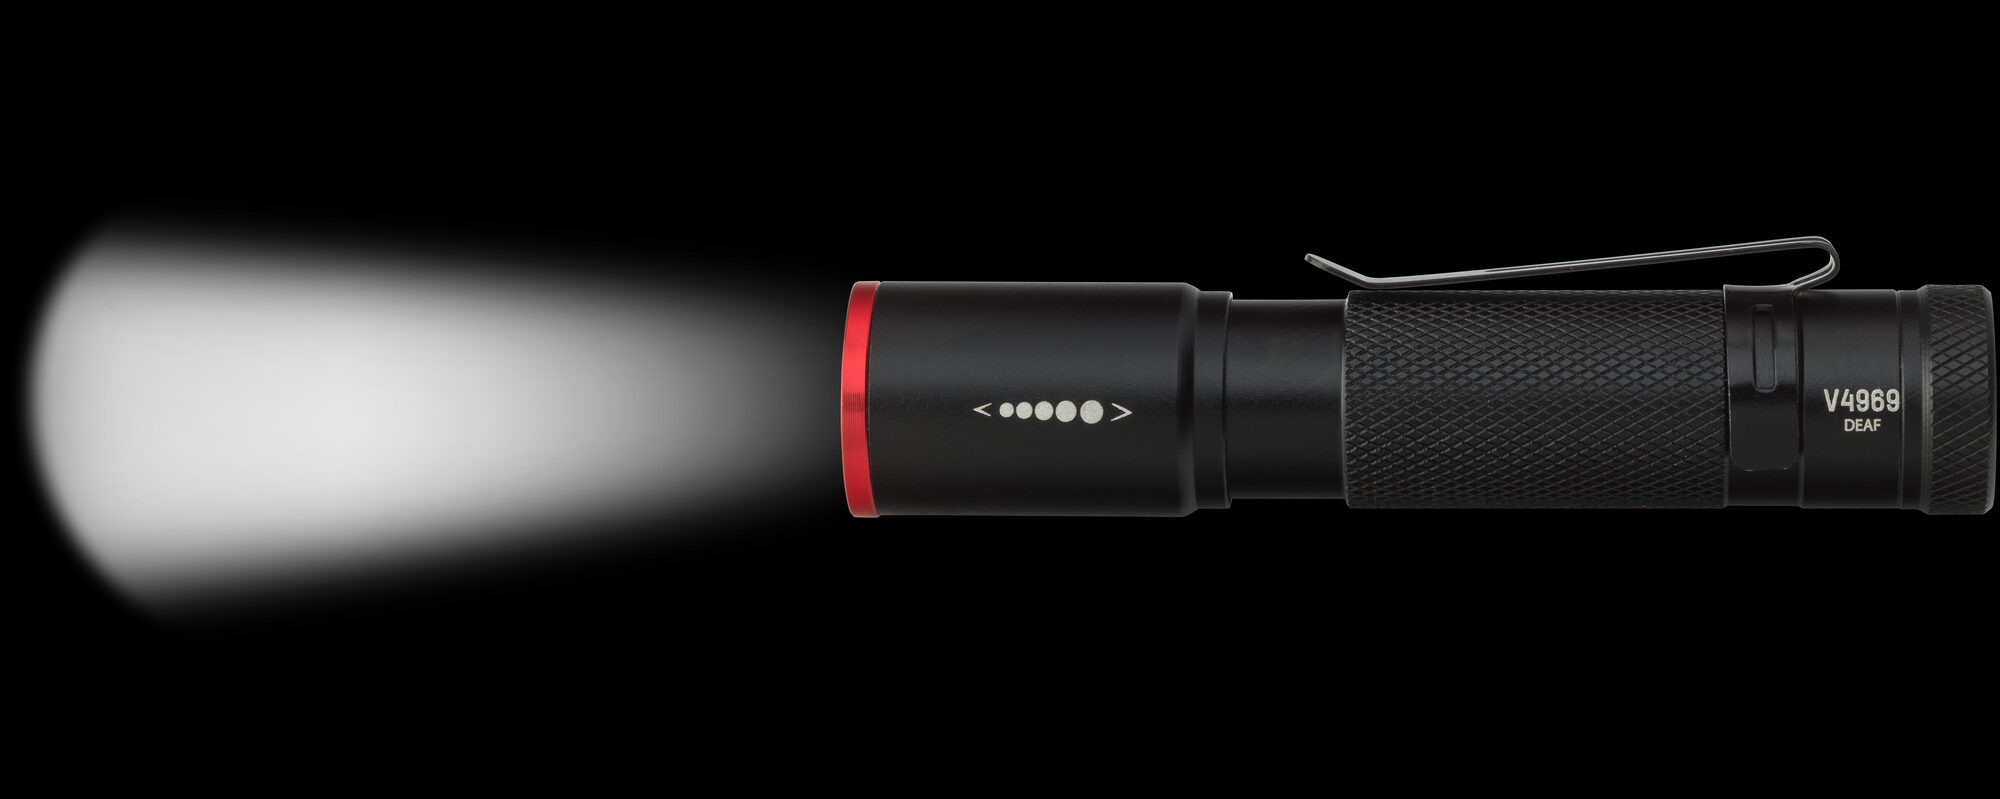 VIGOR LED Lampe · V4969 · 110 mm